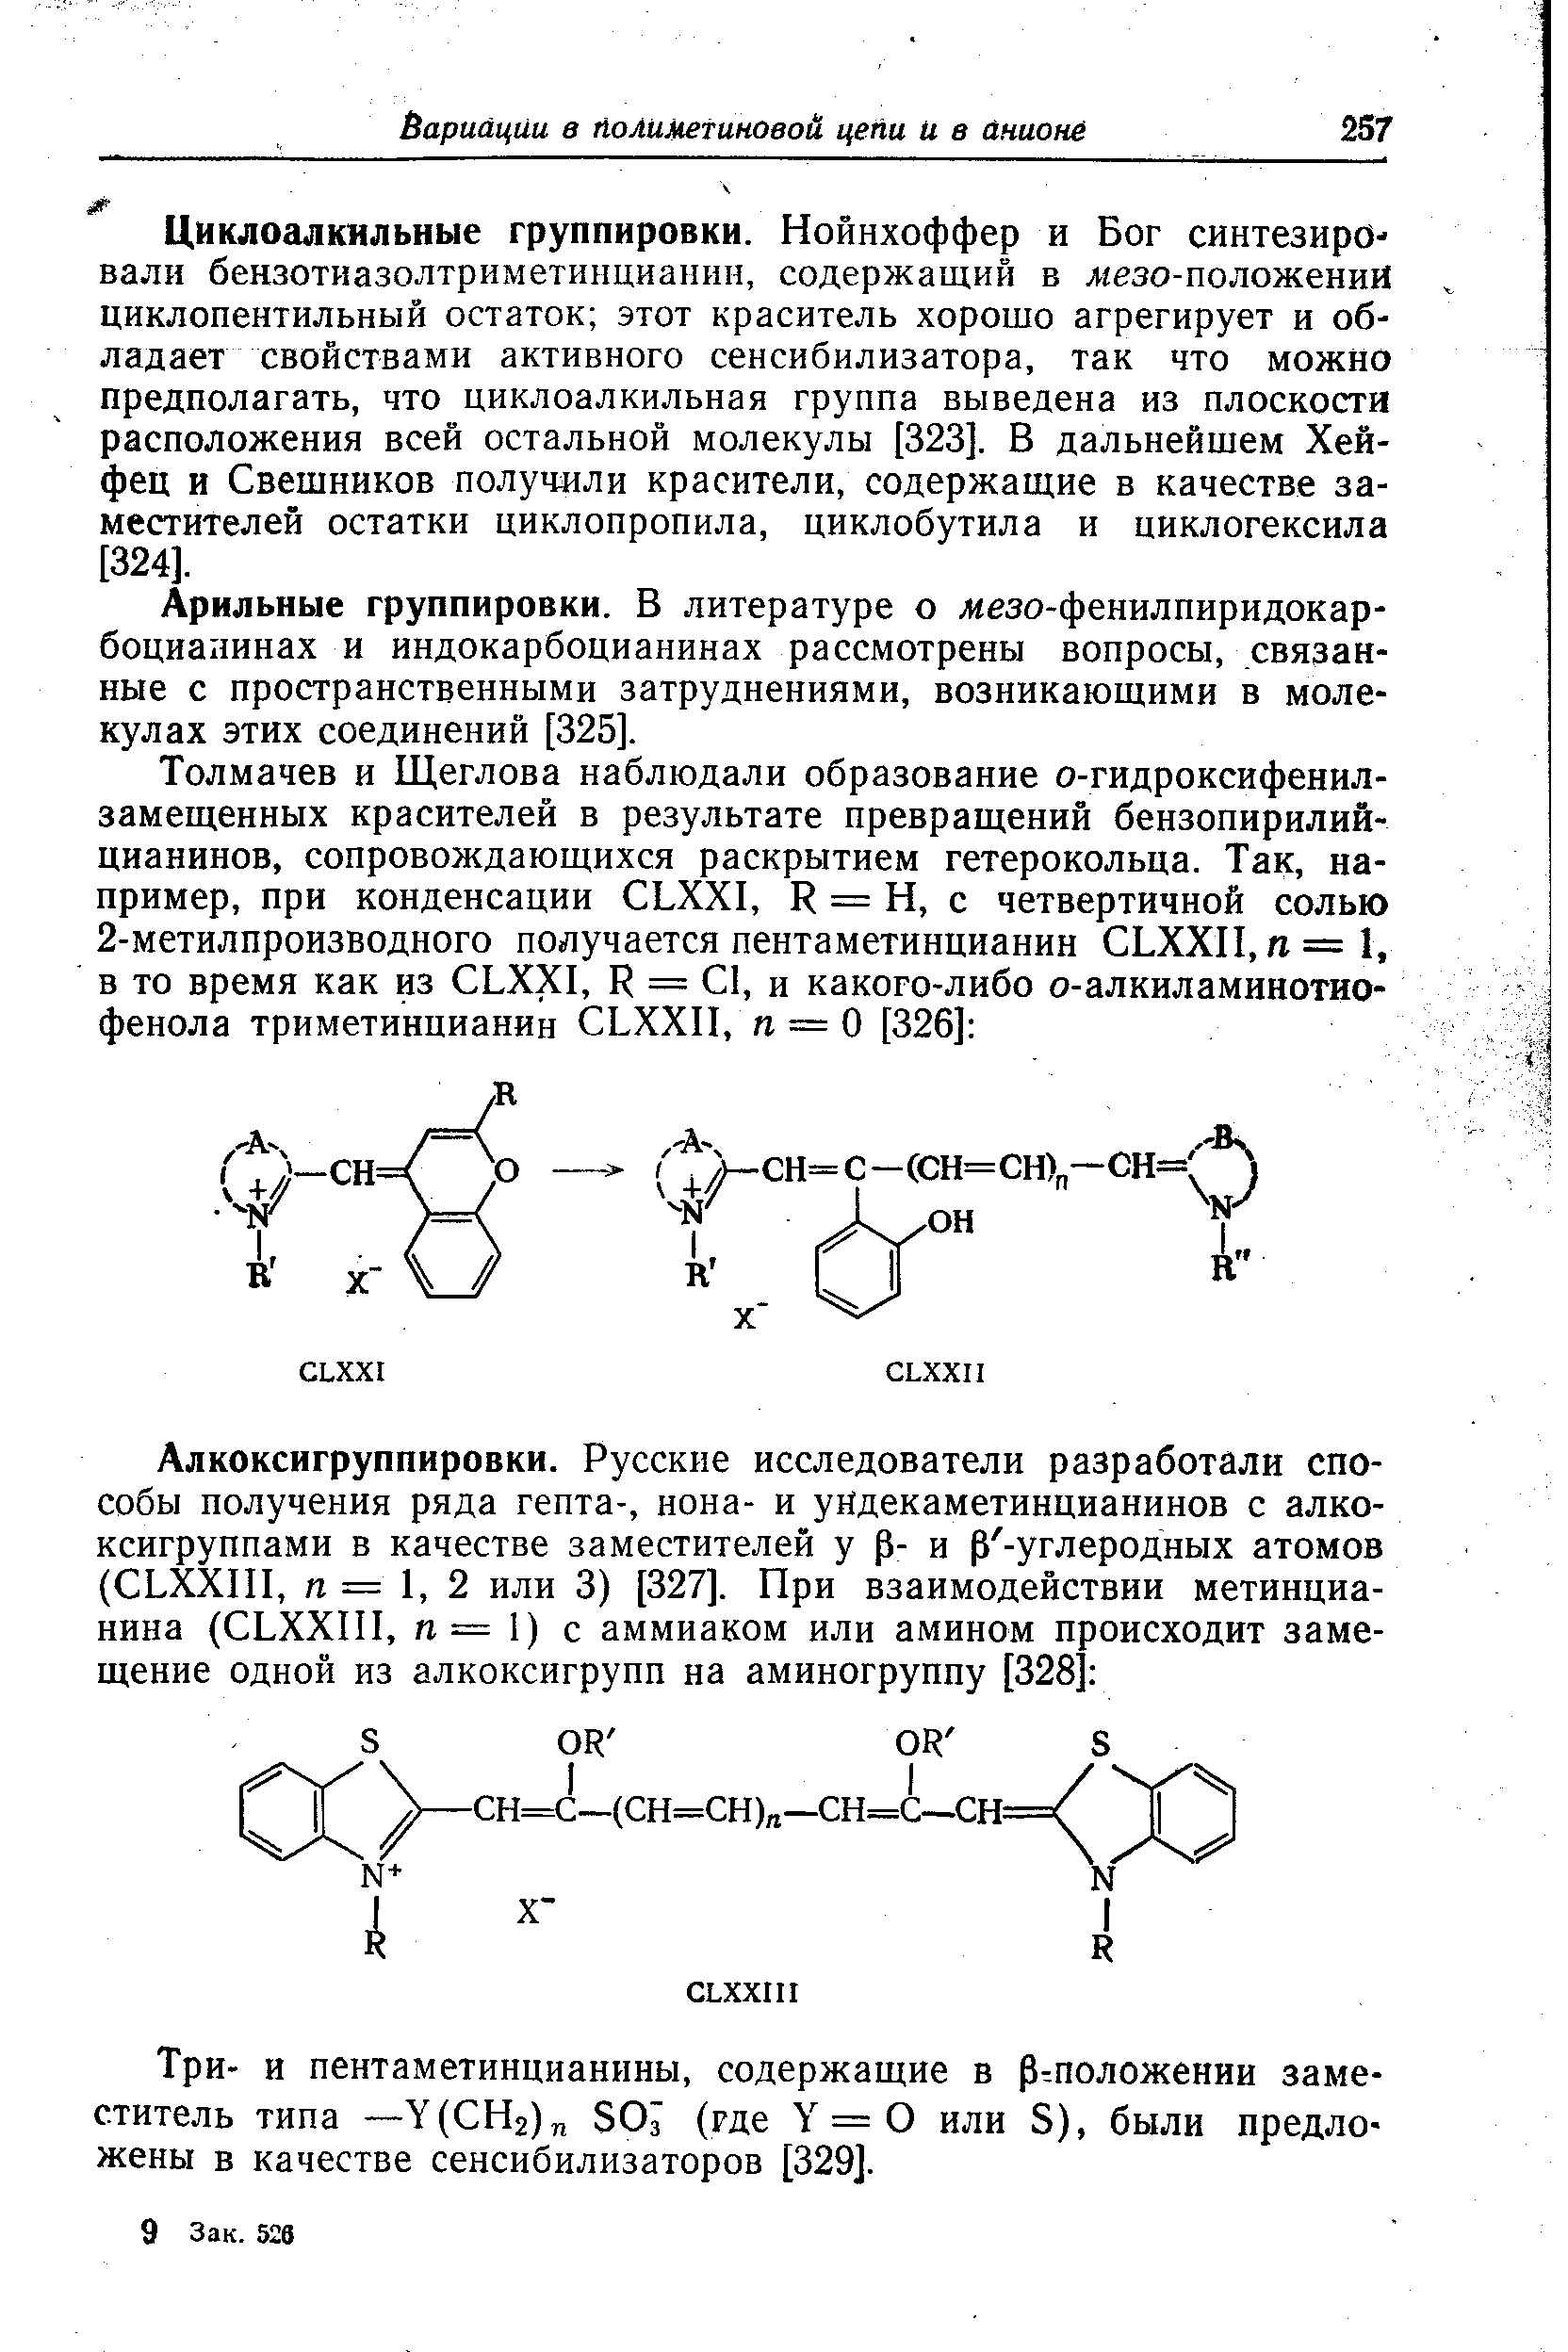 Три- и пентаметинцианины, содержащие в р положении заместитель типа —У(СИ2) 50 (где = 0 или 5), были предложены в качестве сенсибилизаторов [329].